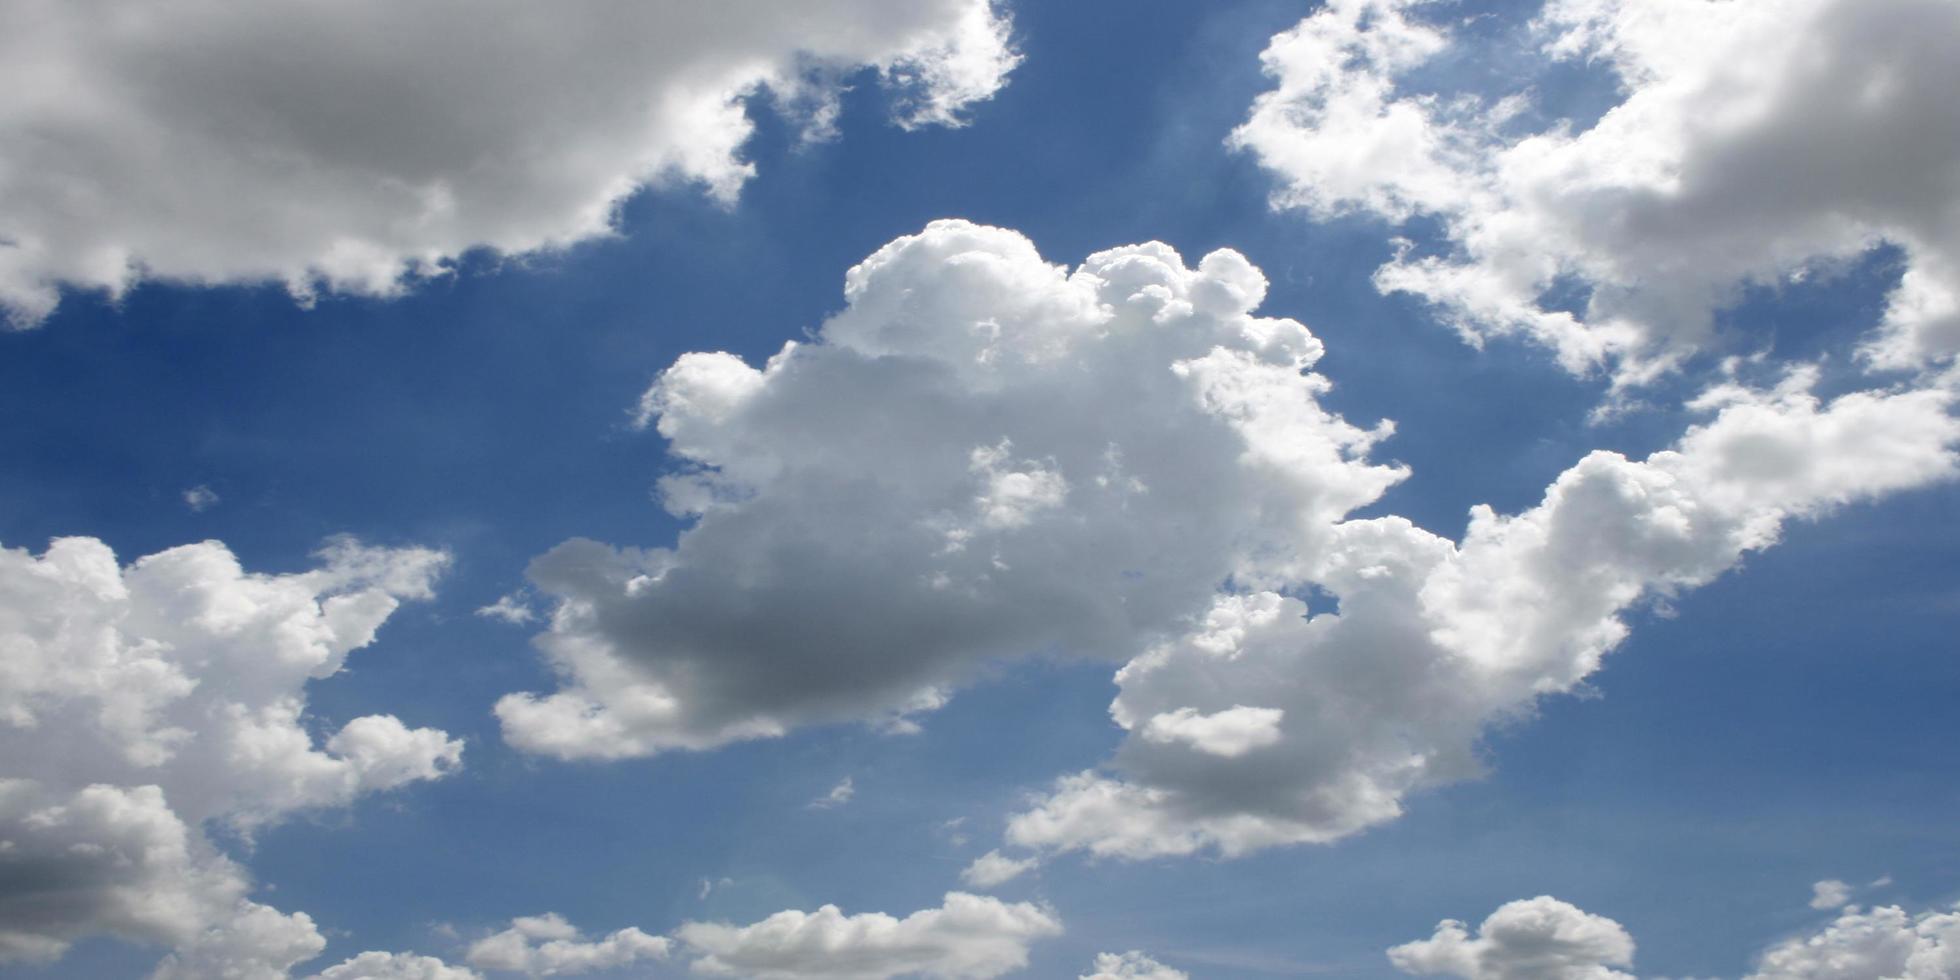 nuvens brancas fofas em um céu azul durante o dia foto